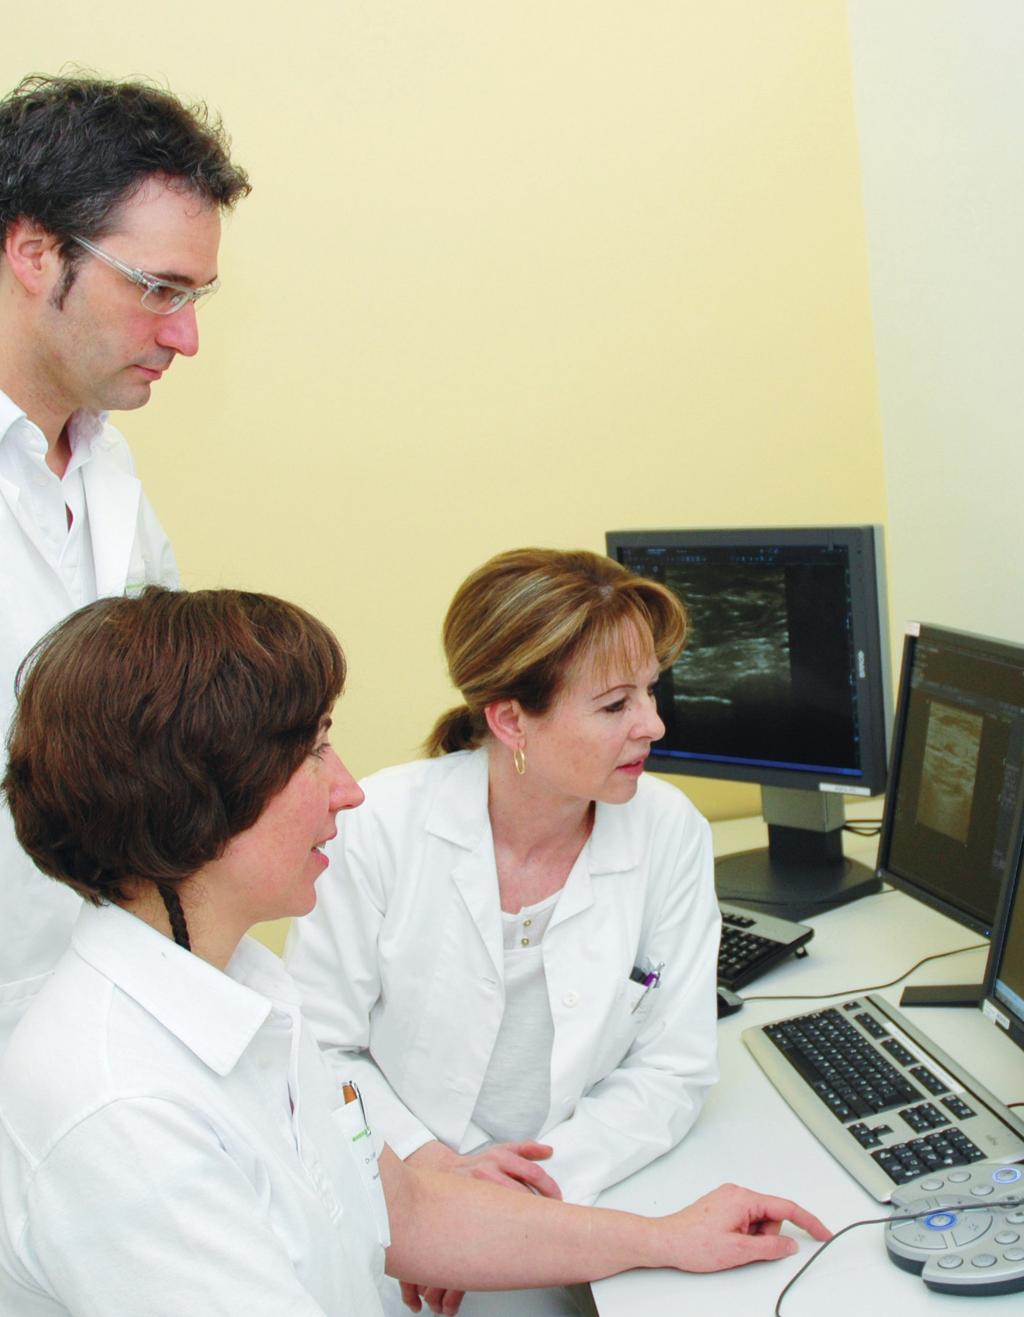 Radiologie - Diagnostik Die radiologische Diagnostik der Brust umfasst neben der Mammographie auch den Ultraschall und die Kernspintomographie (MRT).